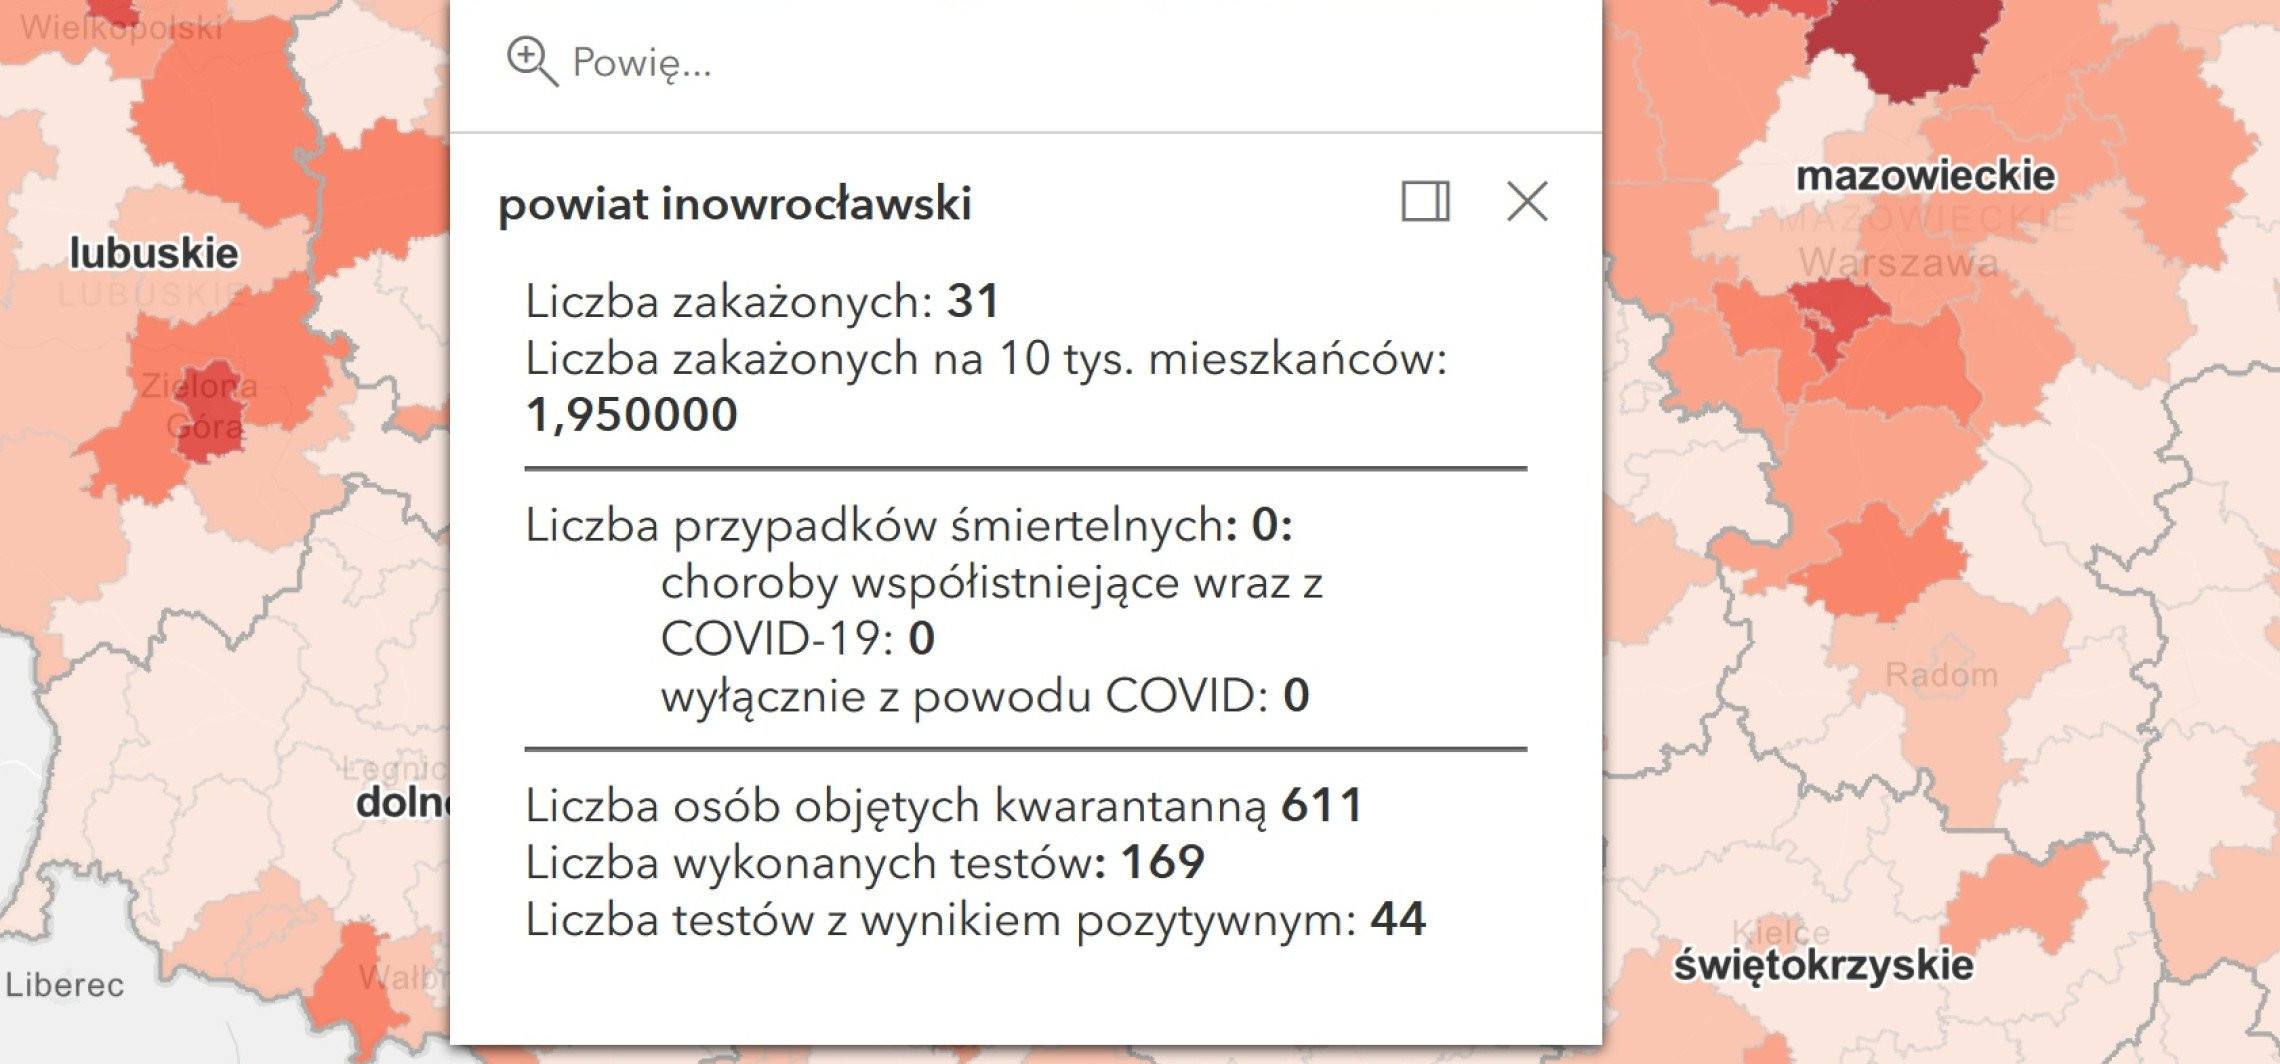 Inowrocław - Wciąż sporo zakażeń, mniej zgonów